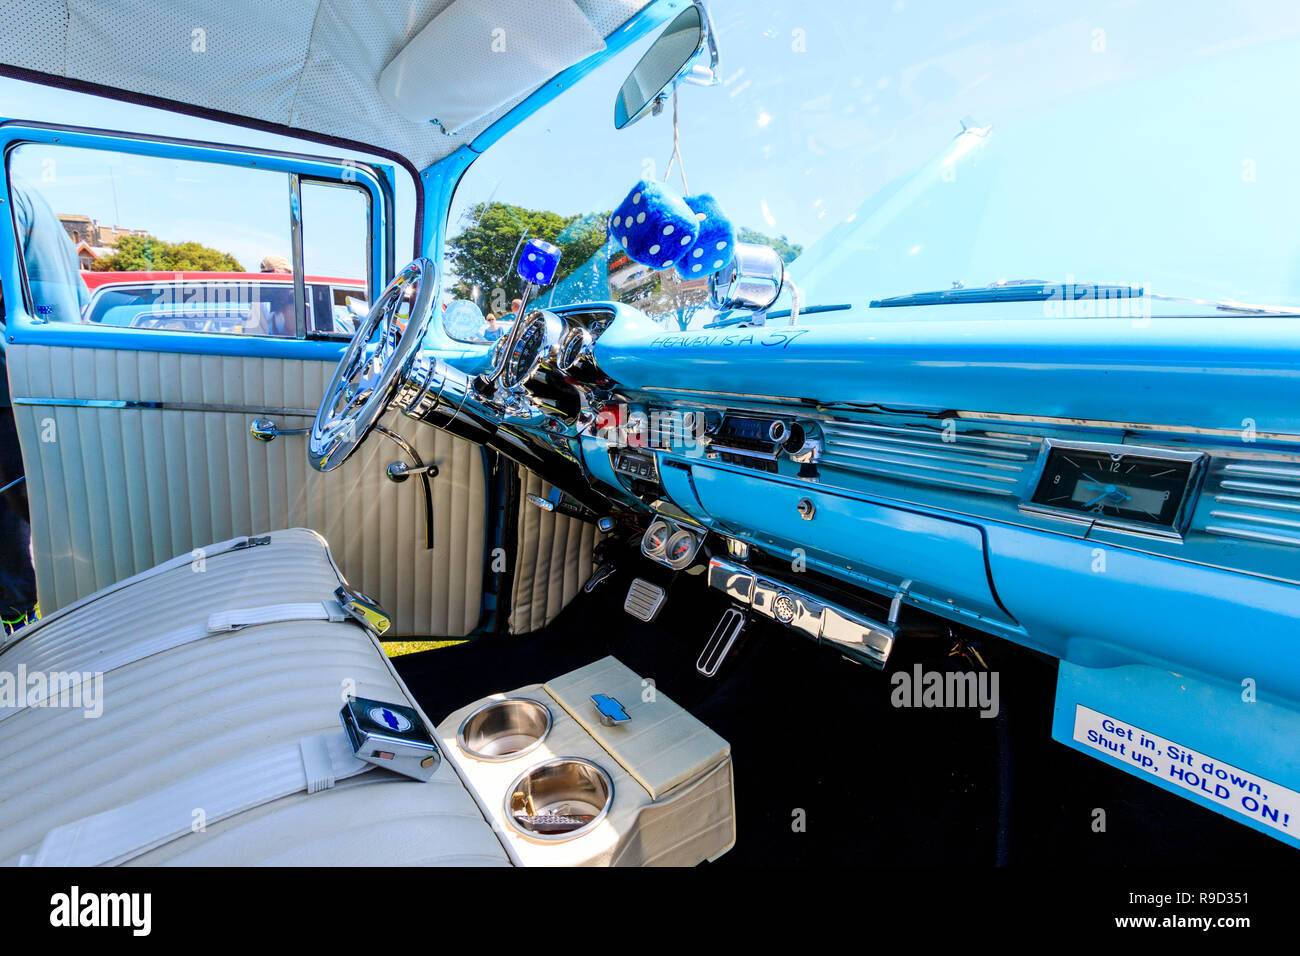 1957 Chevrolet Bel Air Auto. Interieur von Beifahrersitz, flauschigen Würfel  hängen vom Spiegel, hellblau Dashboard, Zeichen, der Himmel ist ein 57  Stockfotografie - Alamy